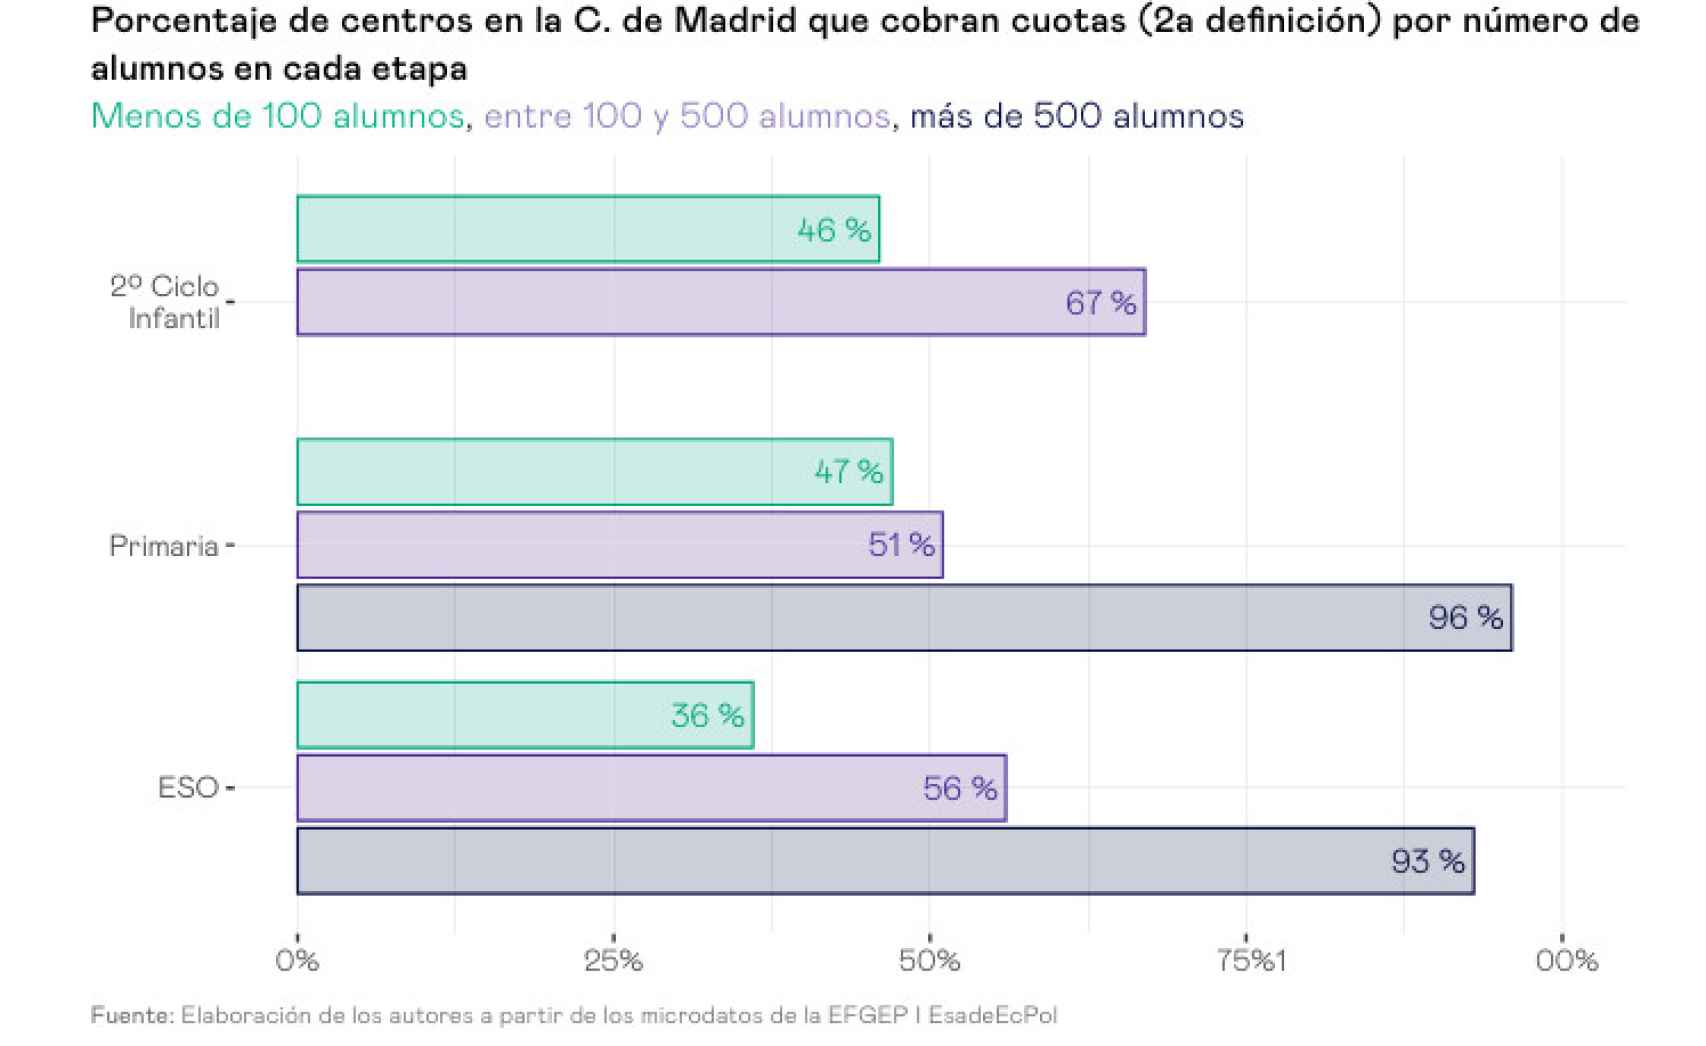 Porcentaje de centros en la C. de Madrid que cobran cuotas (2a definición) por número de alumnos en cada etapa